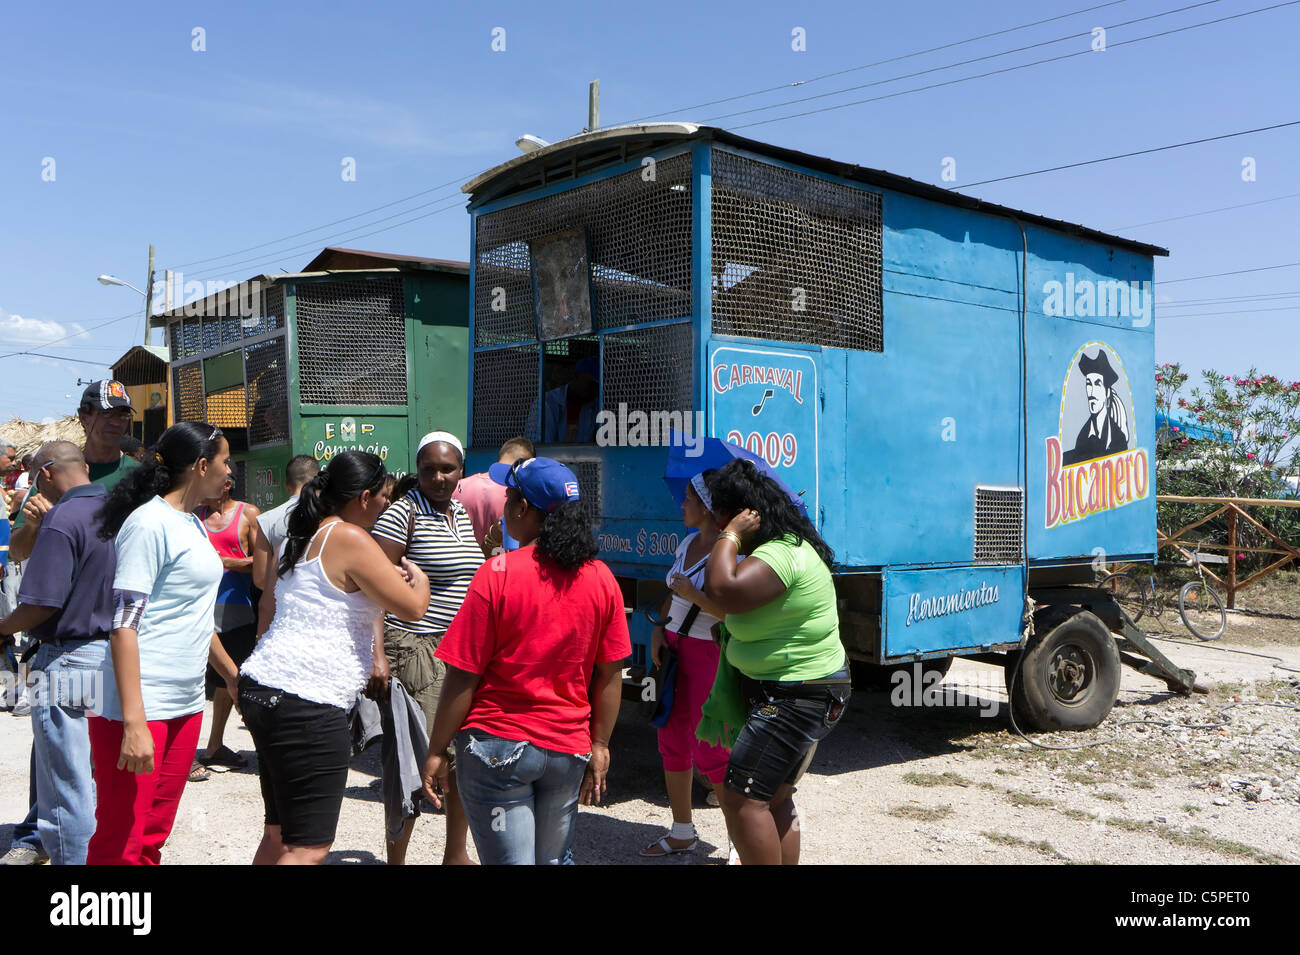 Los cubanos Bailando salsa cerca de un camión de cerveza durante todo el día de fiesta para celebrar el 50º aniversario de la victoria de Bahía de Cochinos, Playa Girón Foto de stock